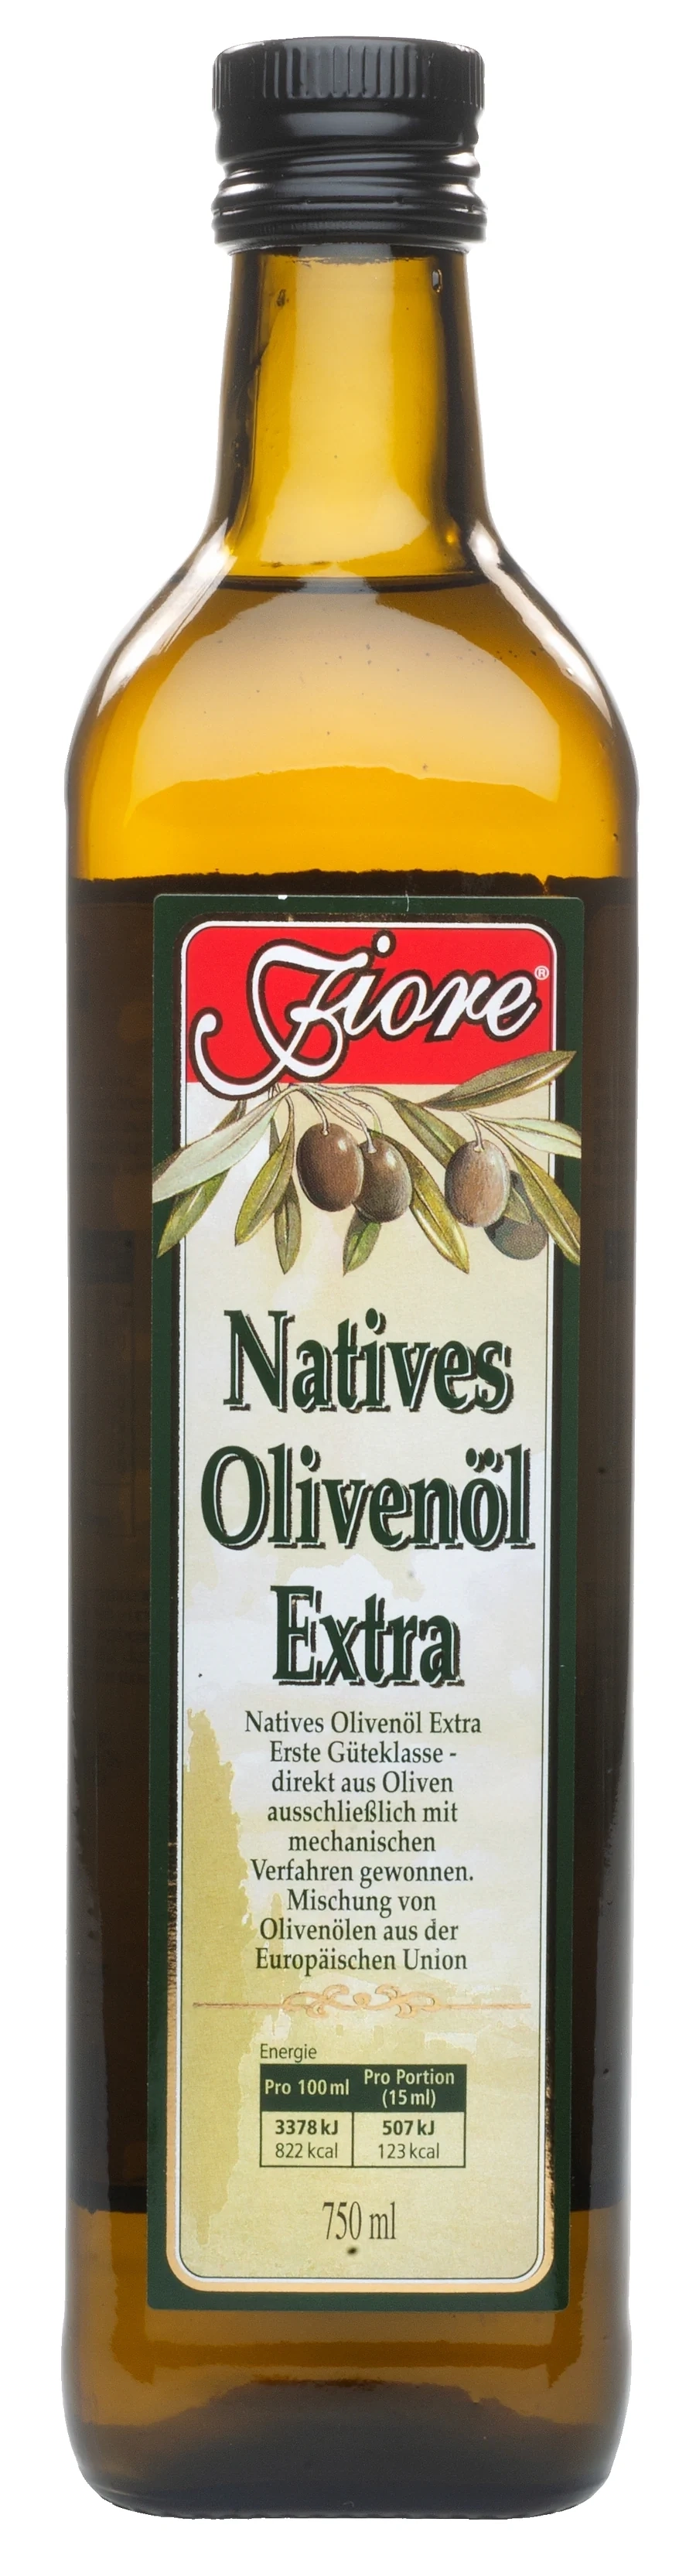 Fiore Natives Olivenöl extra